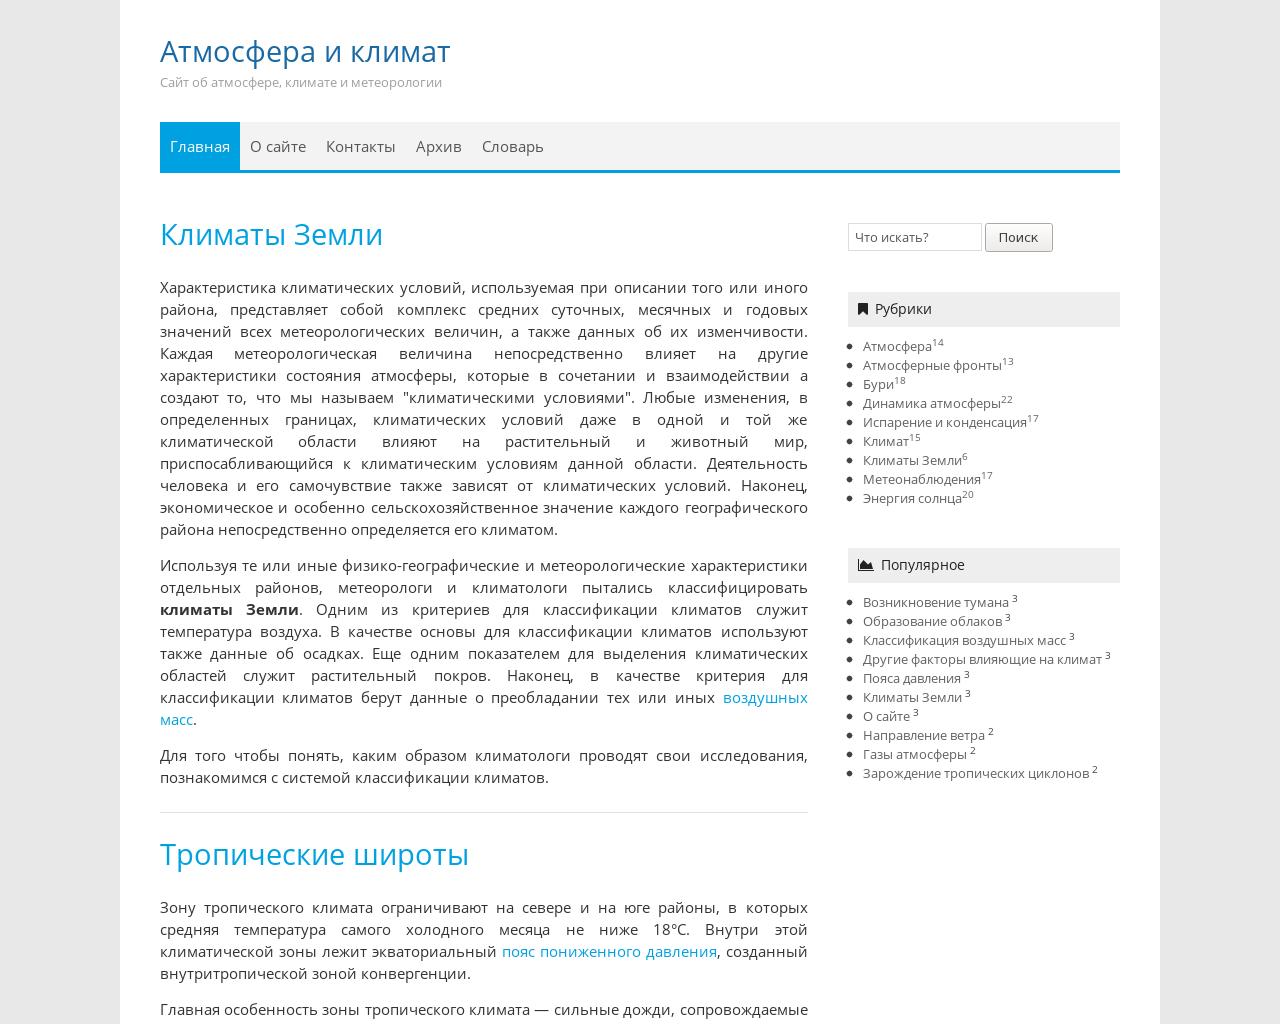 Изображение сайта obatmosfere.ru в разрешении 1280x1024